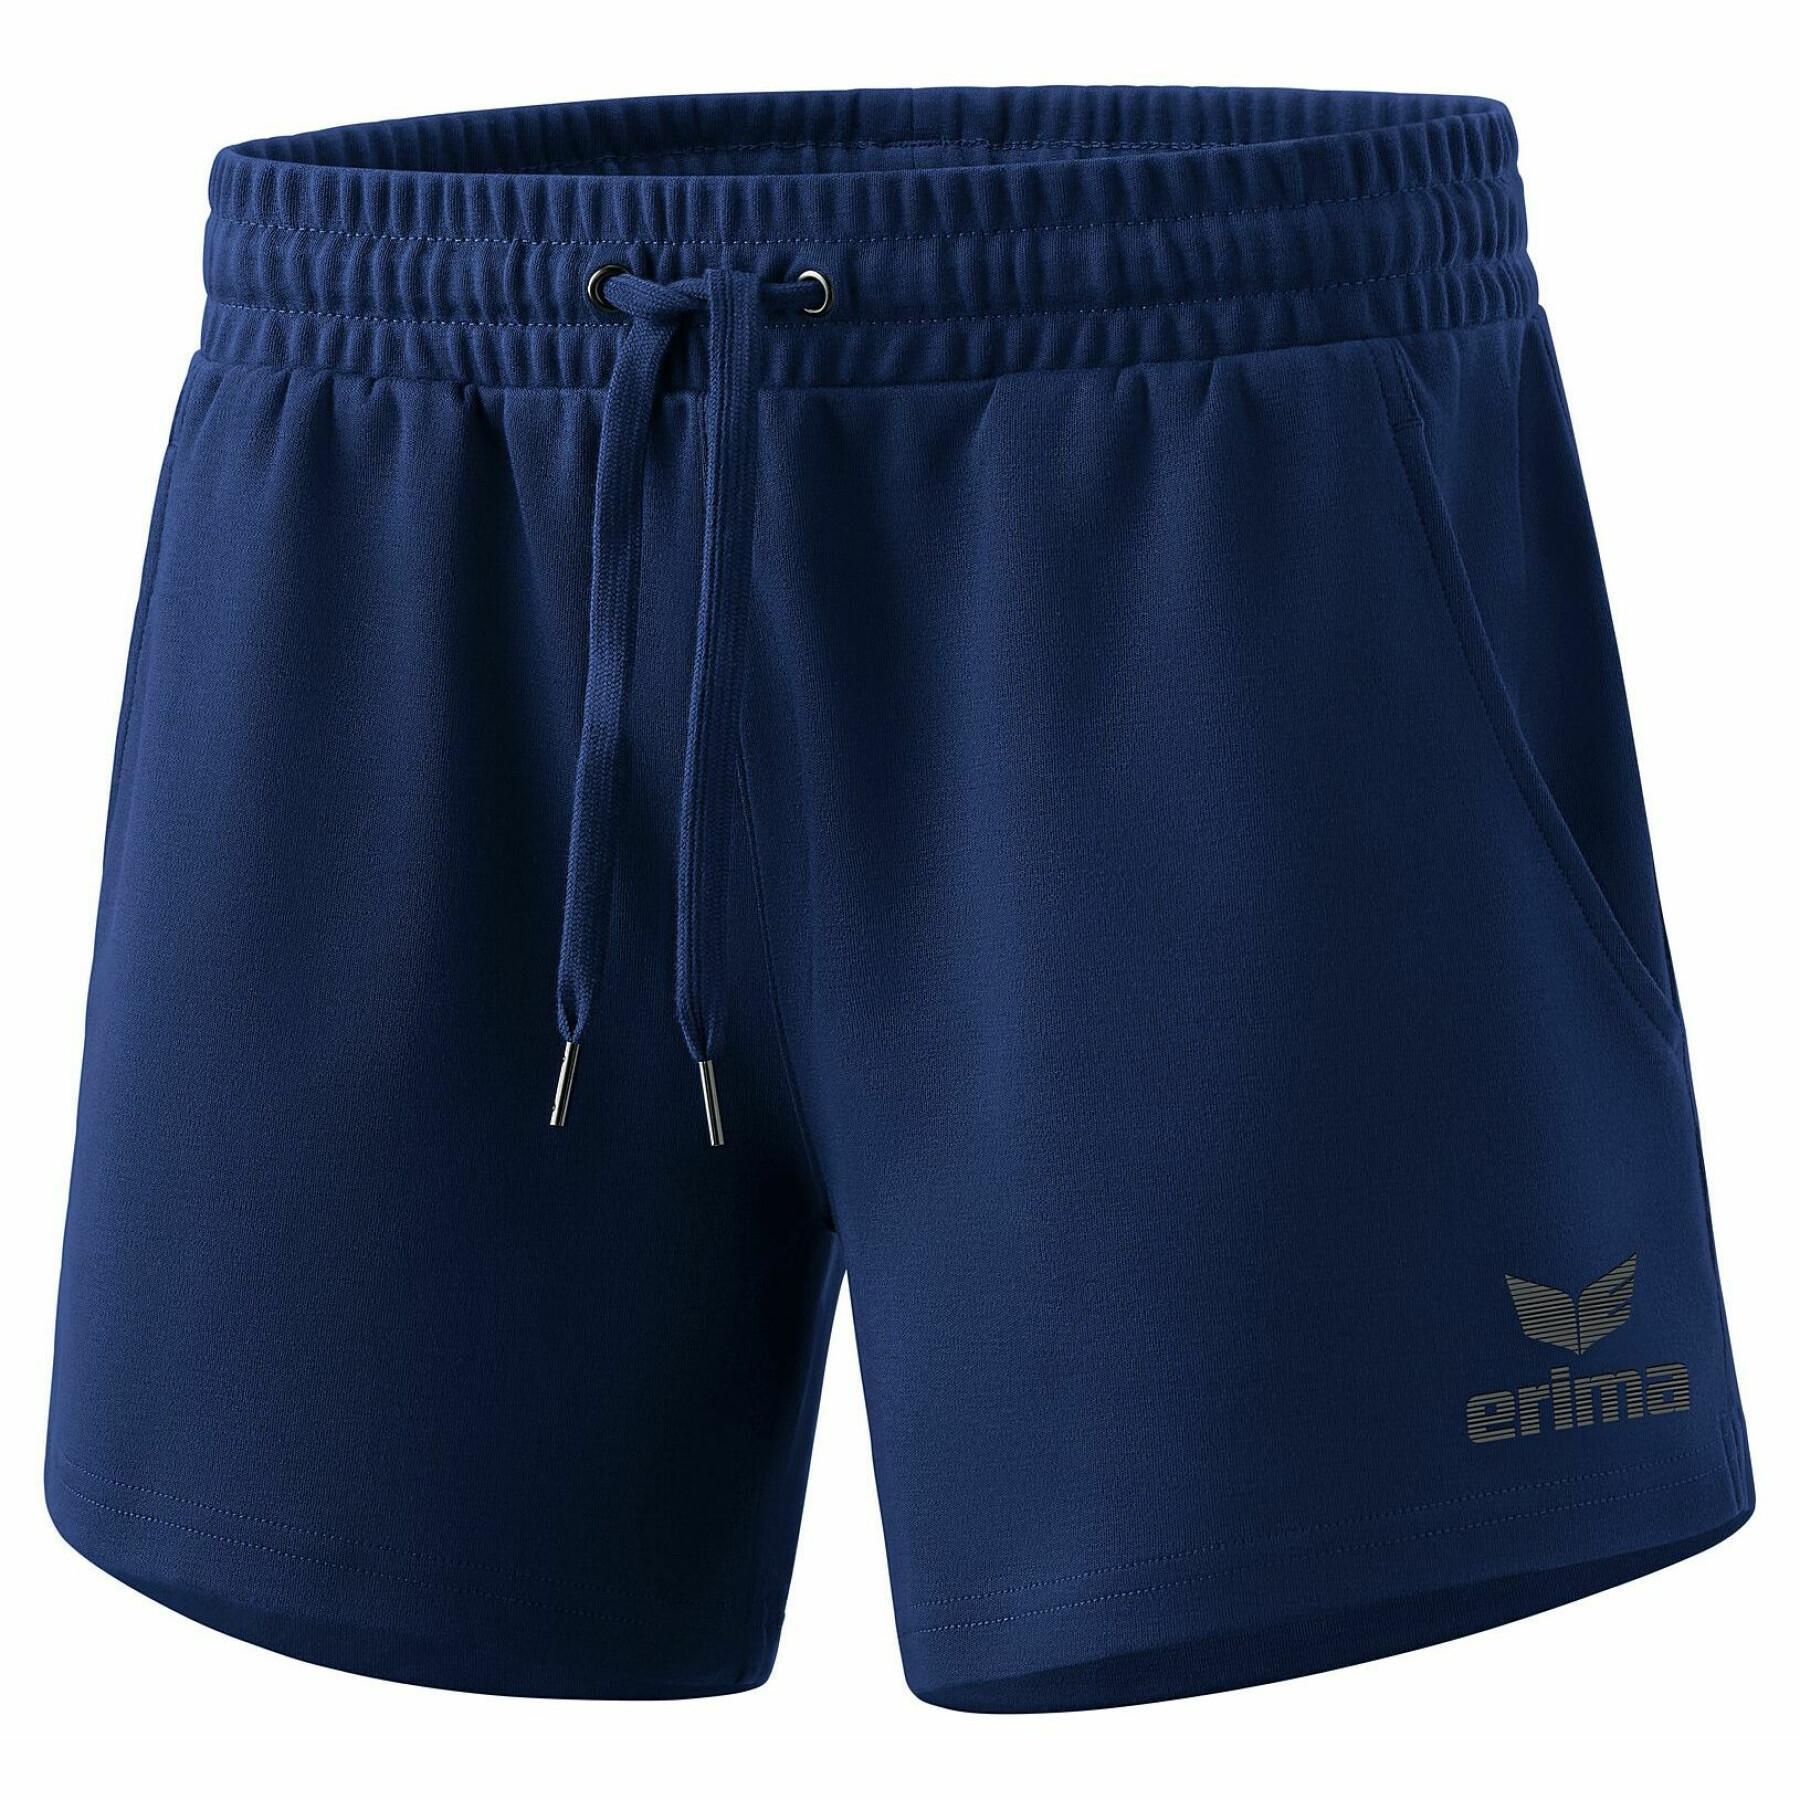 Dames shorts Erima Essential Team